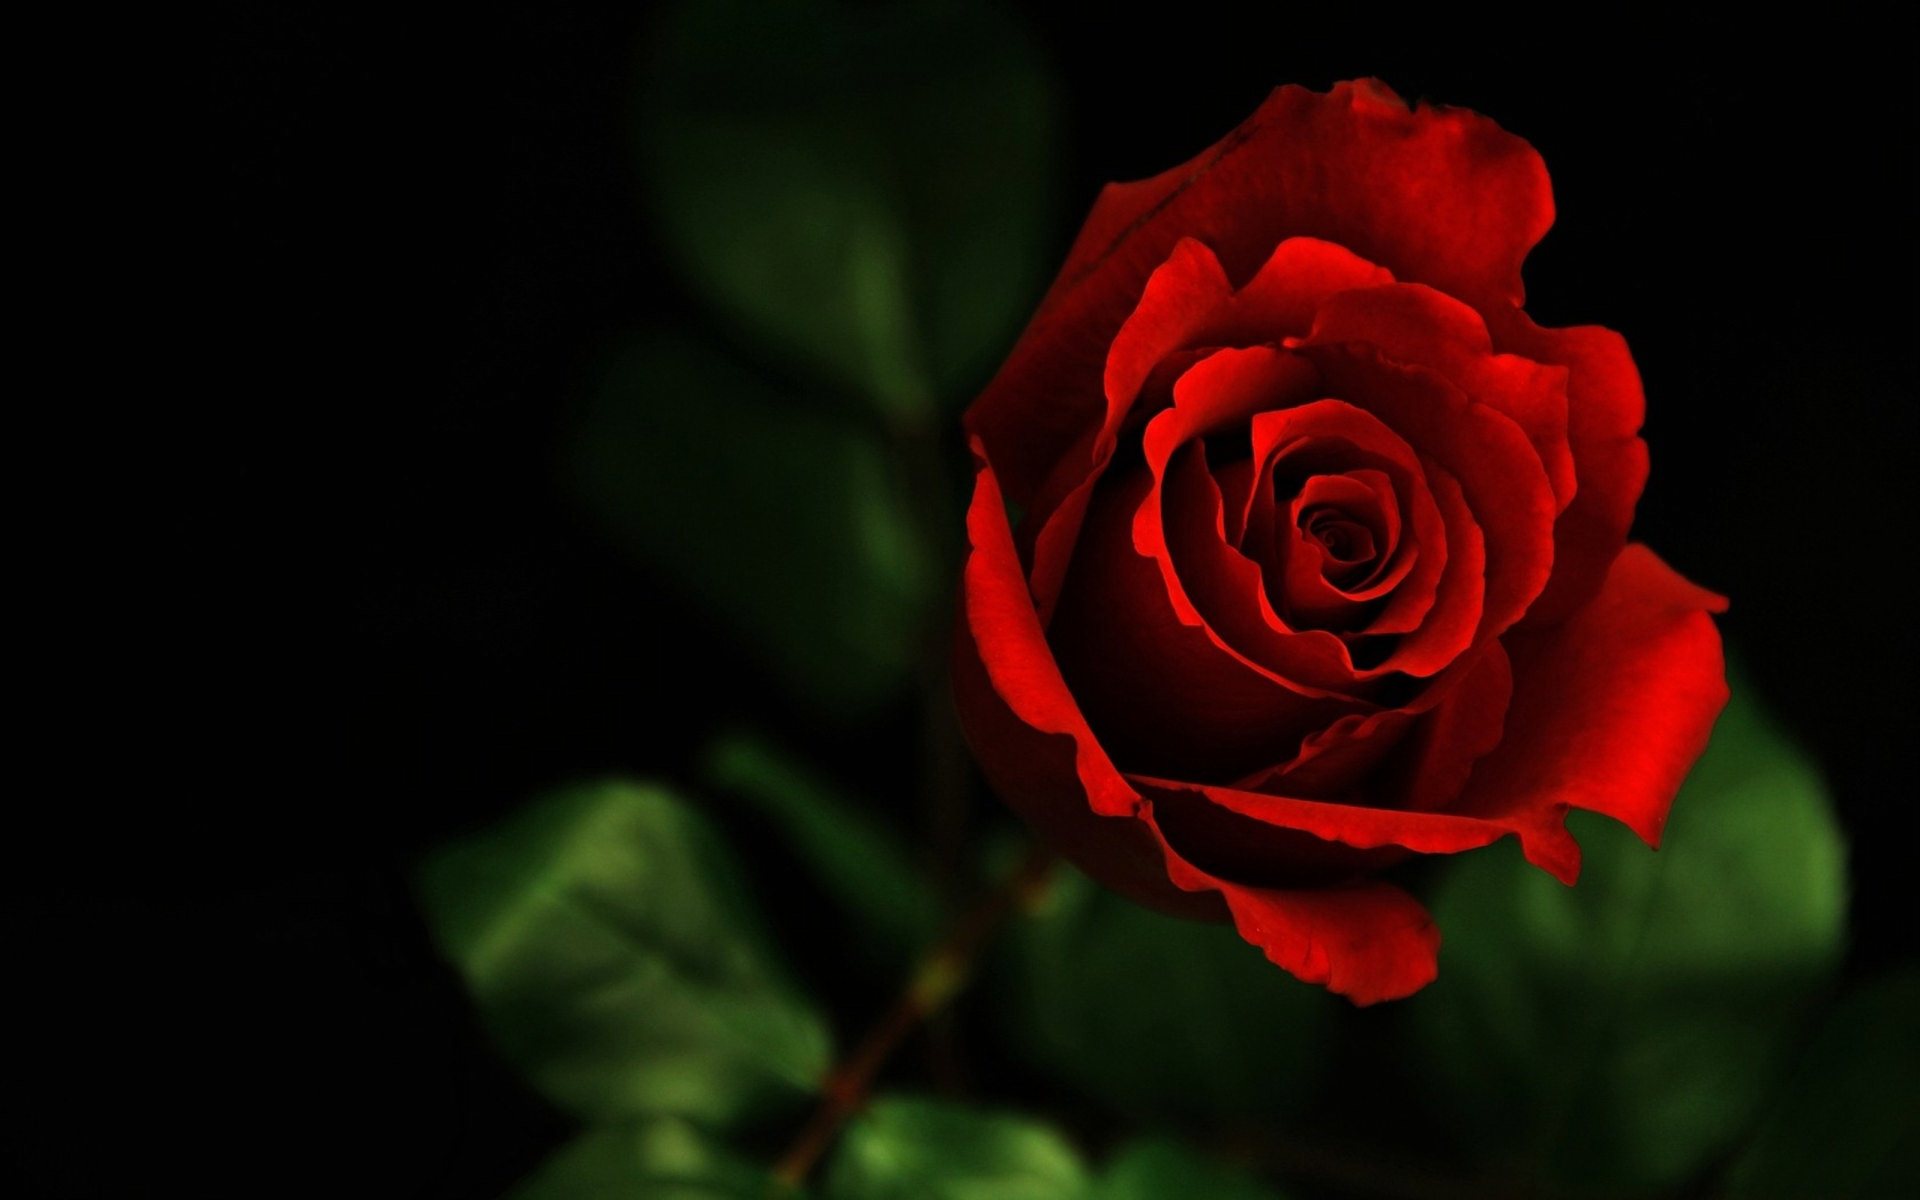 Gambar Bunga Mawar Merah Cantik 11 Gambar Wallpapersforfree